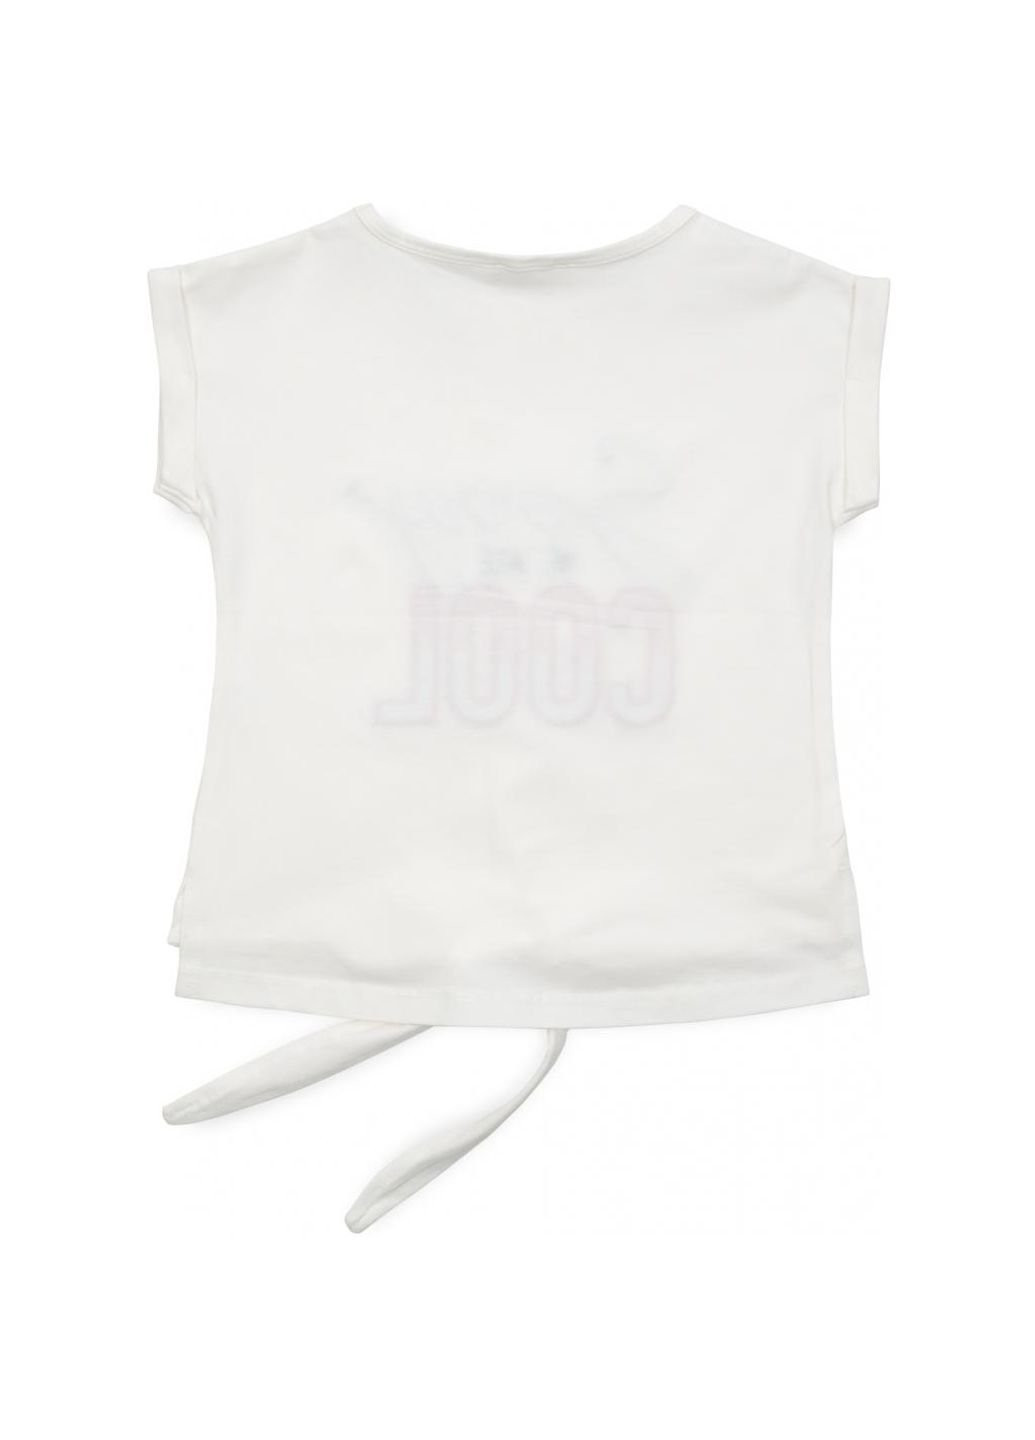 Комбинированная демисезонная футболка детская "sorry we are cool" (14281-152g-cream) Breeze